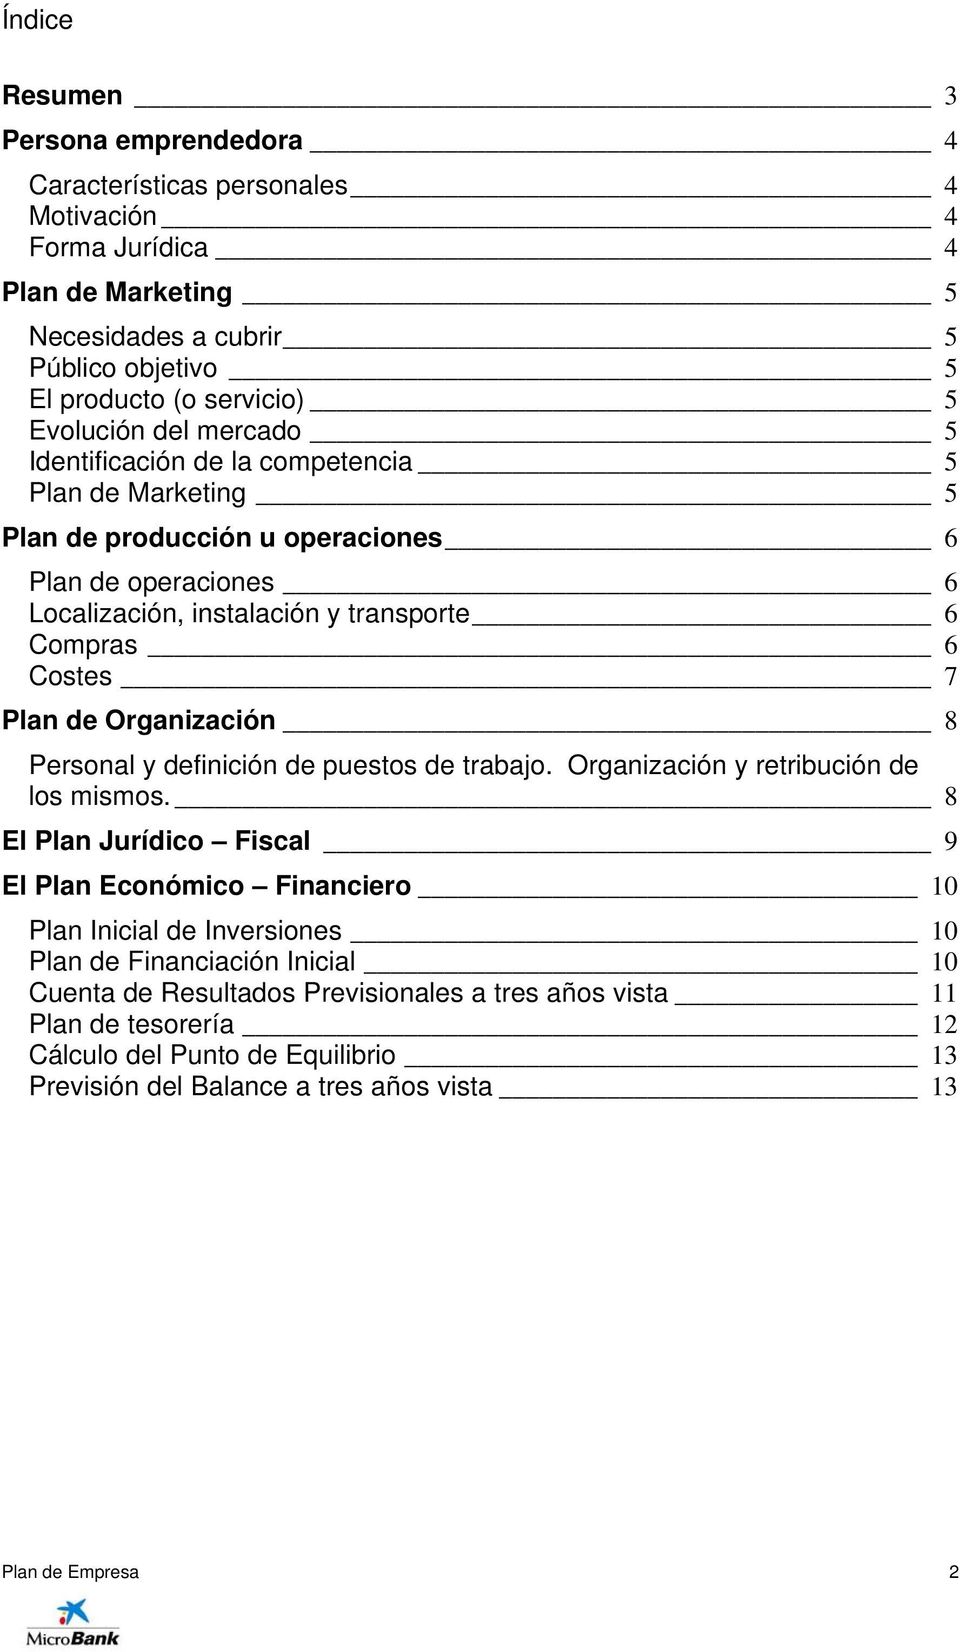 7 Plan de Organización 8 Personal y definición de puestos de trabajo. Organización y retribución de los mismos.